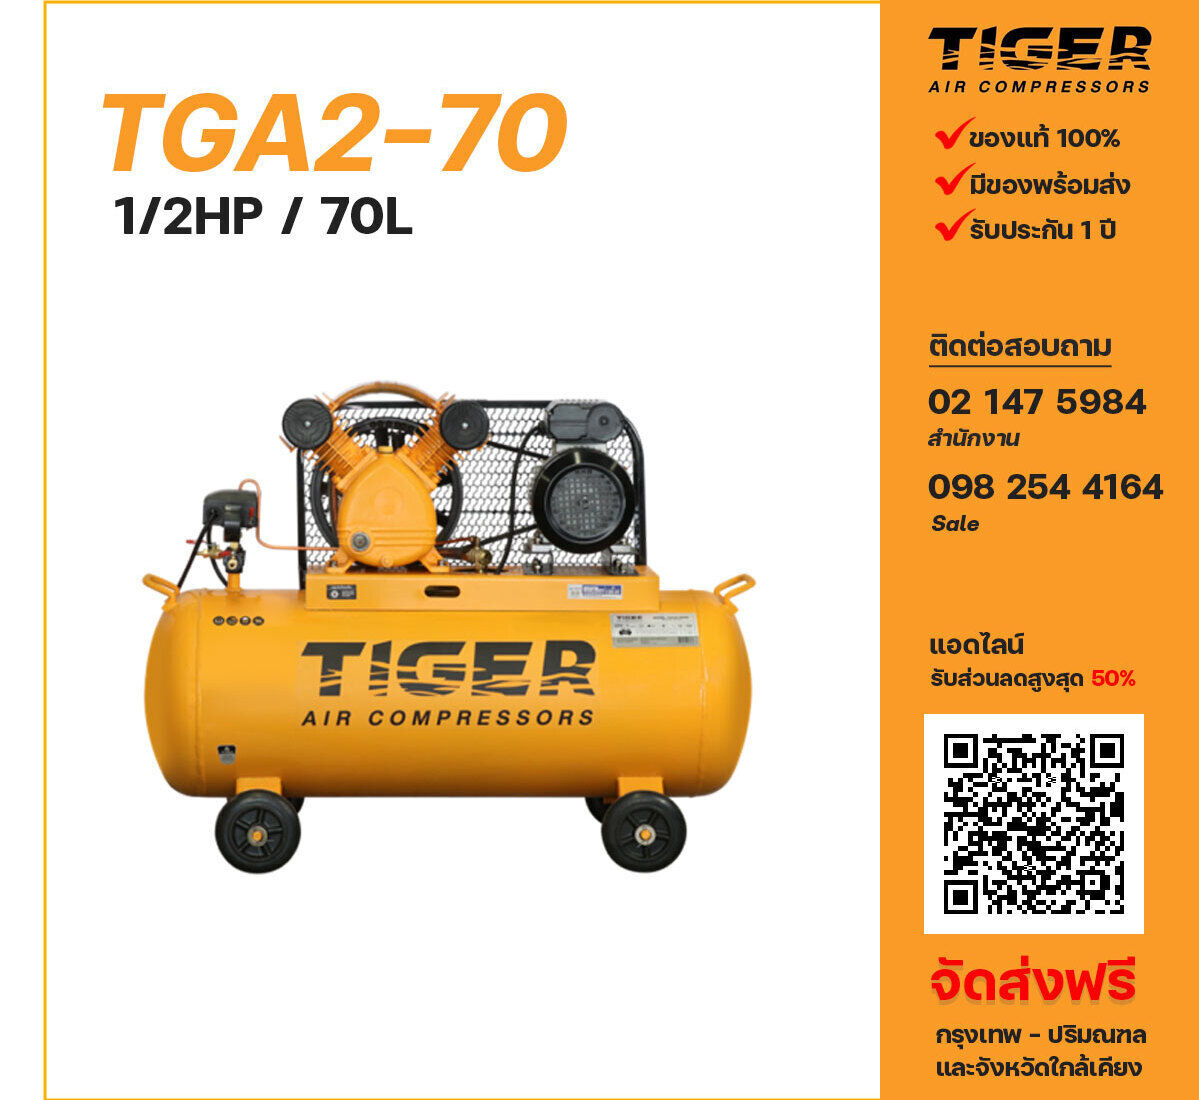 ปั๊มลมไทเกอร์ TIGER TGA2-70 220V ปั๊มลมลูกสูบ ขนาด 2 สูบ 1/2 แรงม้า 70 ลิตร TIGER พร้อมมอเตอร์ ไฟ 220V ส่งฟรี กรุงเทพฯ-ปริมณฑล รับประกัน 1 ปี